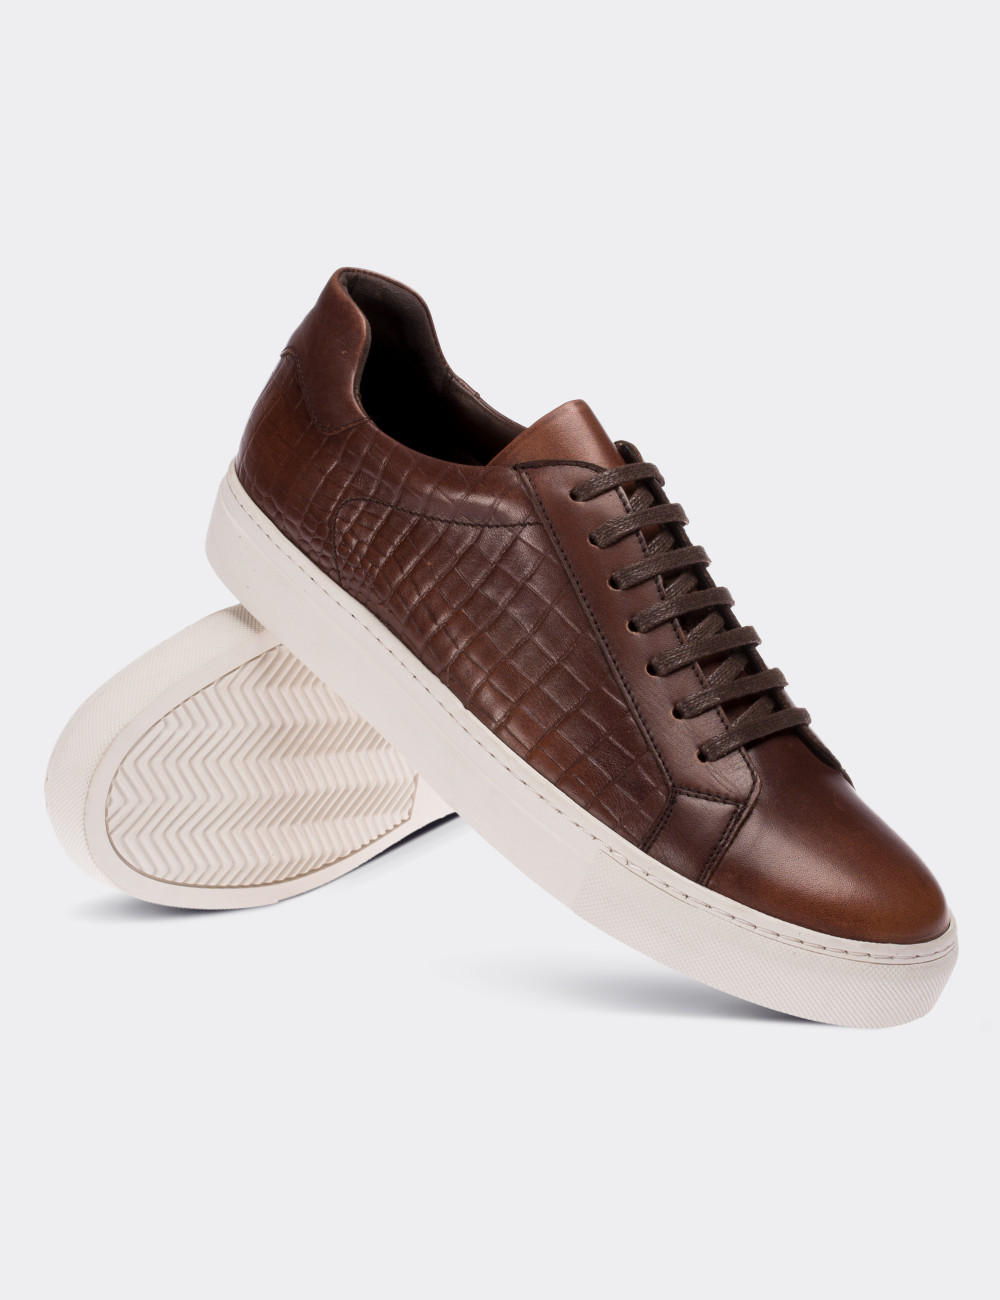 Tan  Leather  Sneakers - 01681MTBAC01